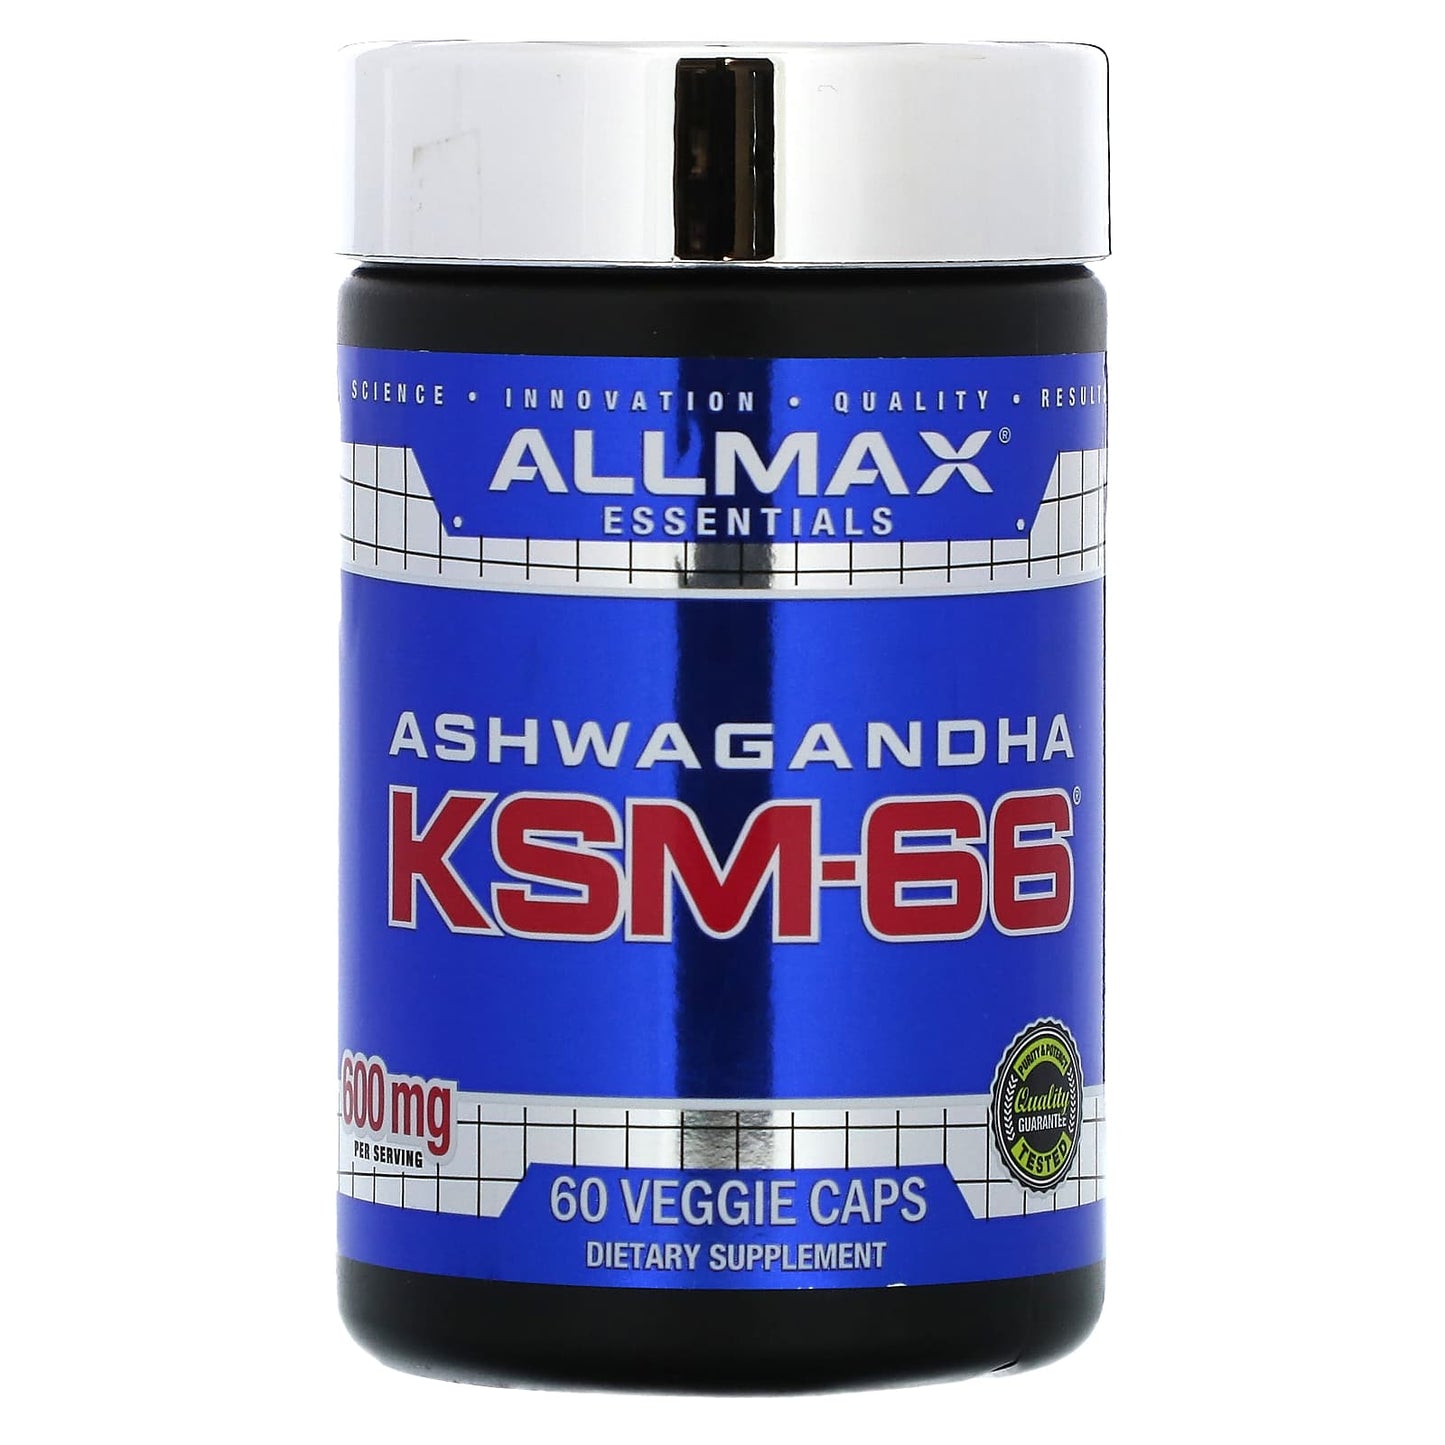 ALLMAX-Ashwagandha KSM-66-600 mg-60 Veggie Caps (300 mg per Capsule)